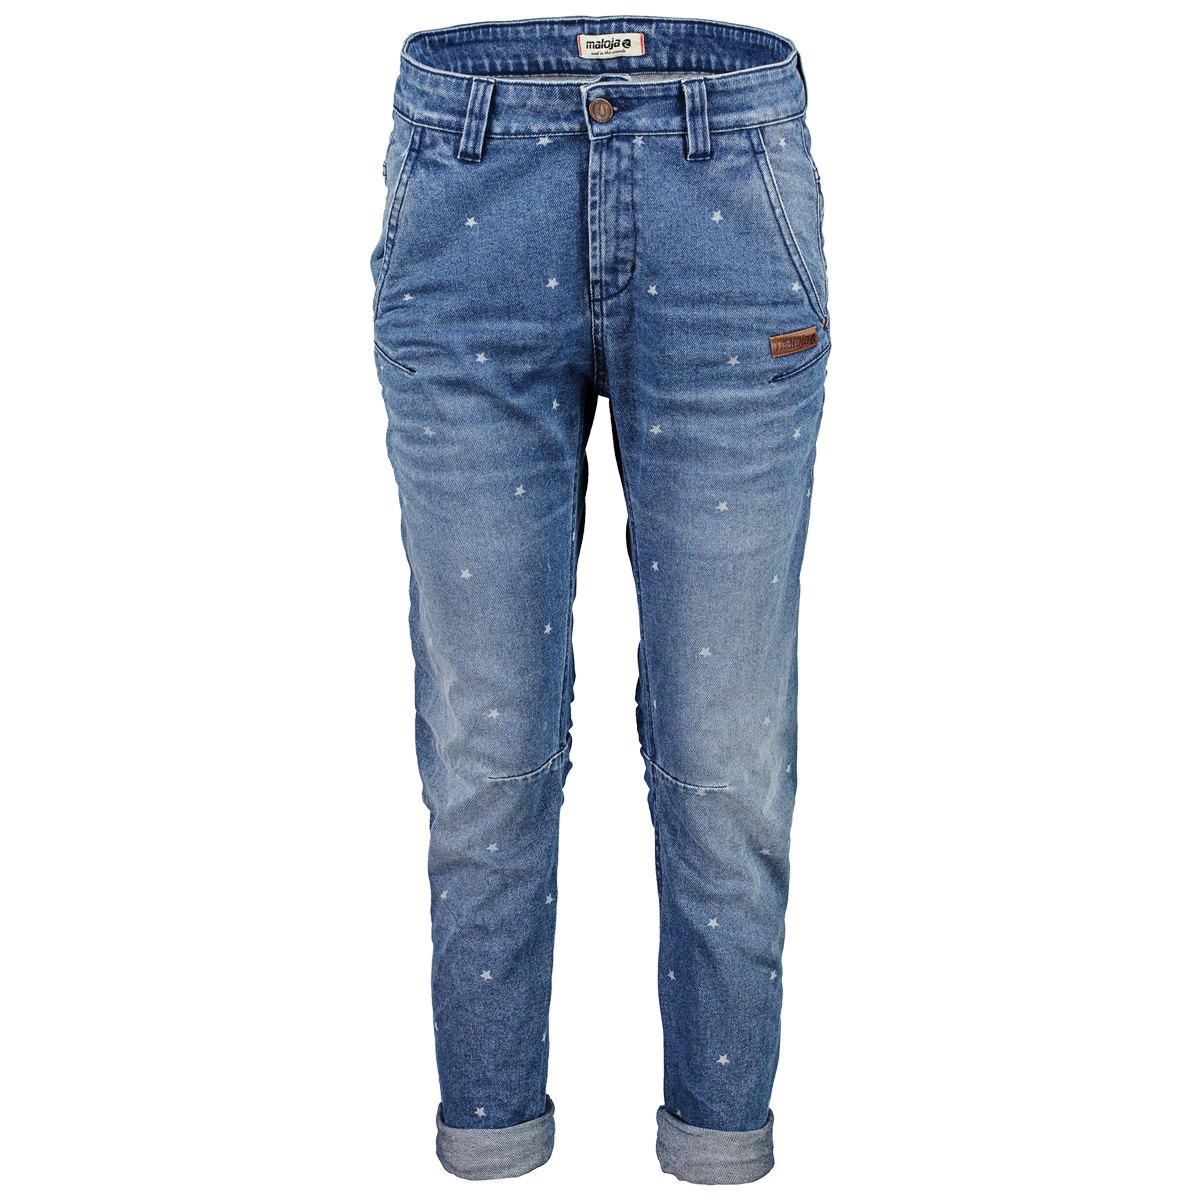 Produktbild von Maloja GritliM. Pants Damen Jeans - Länge 34 - denim blue 8131